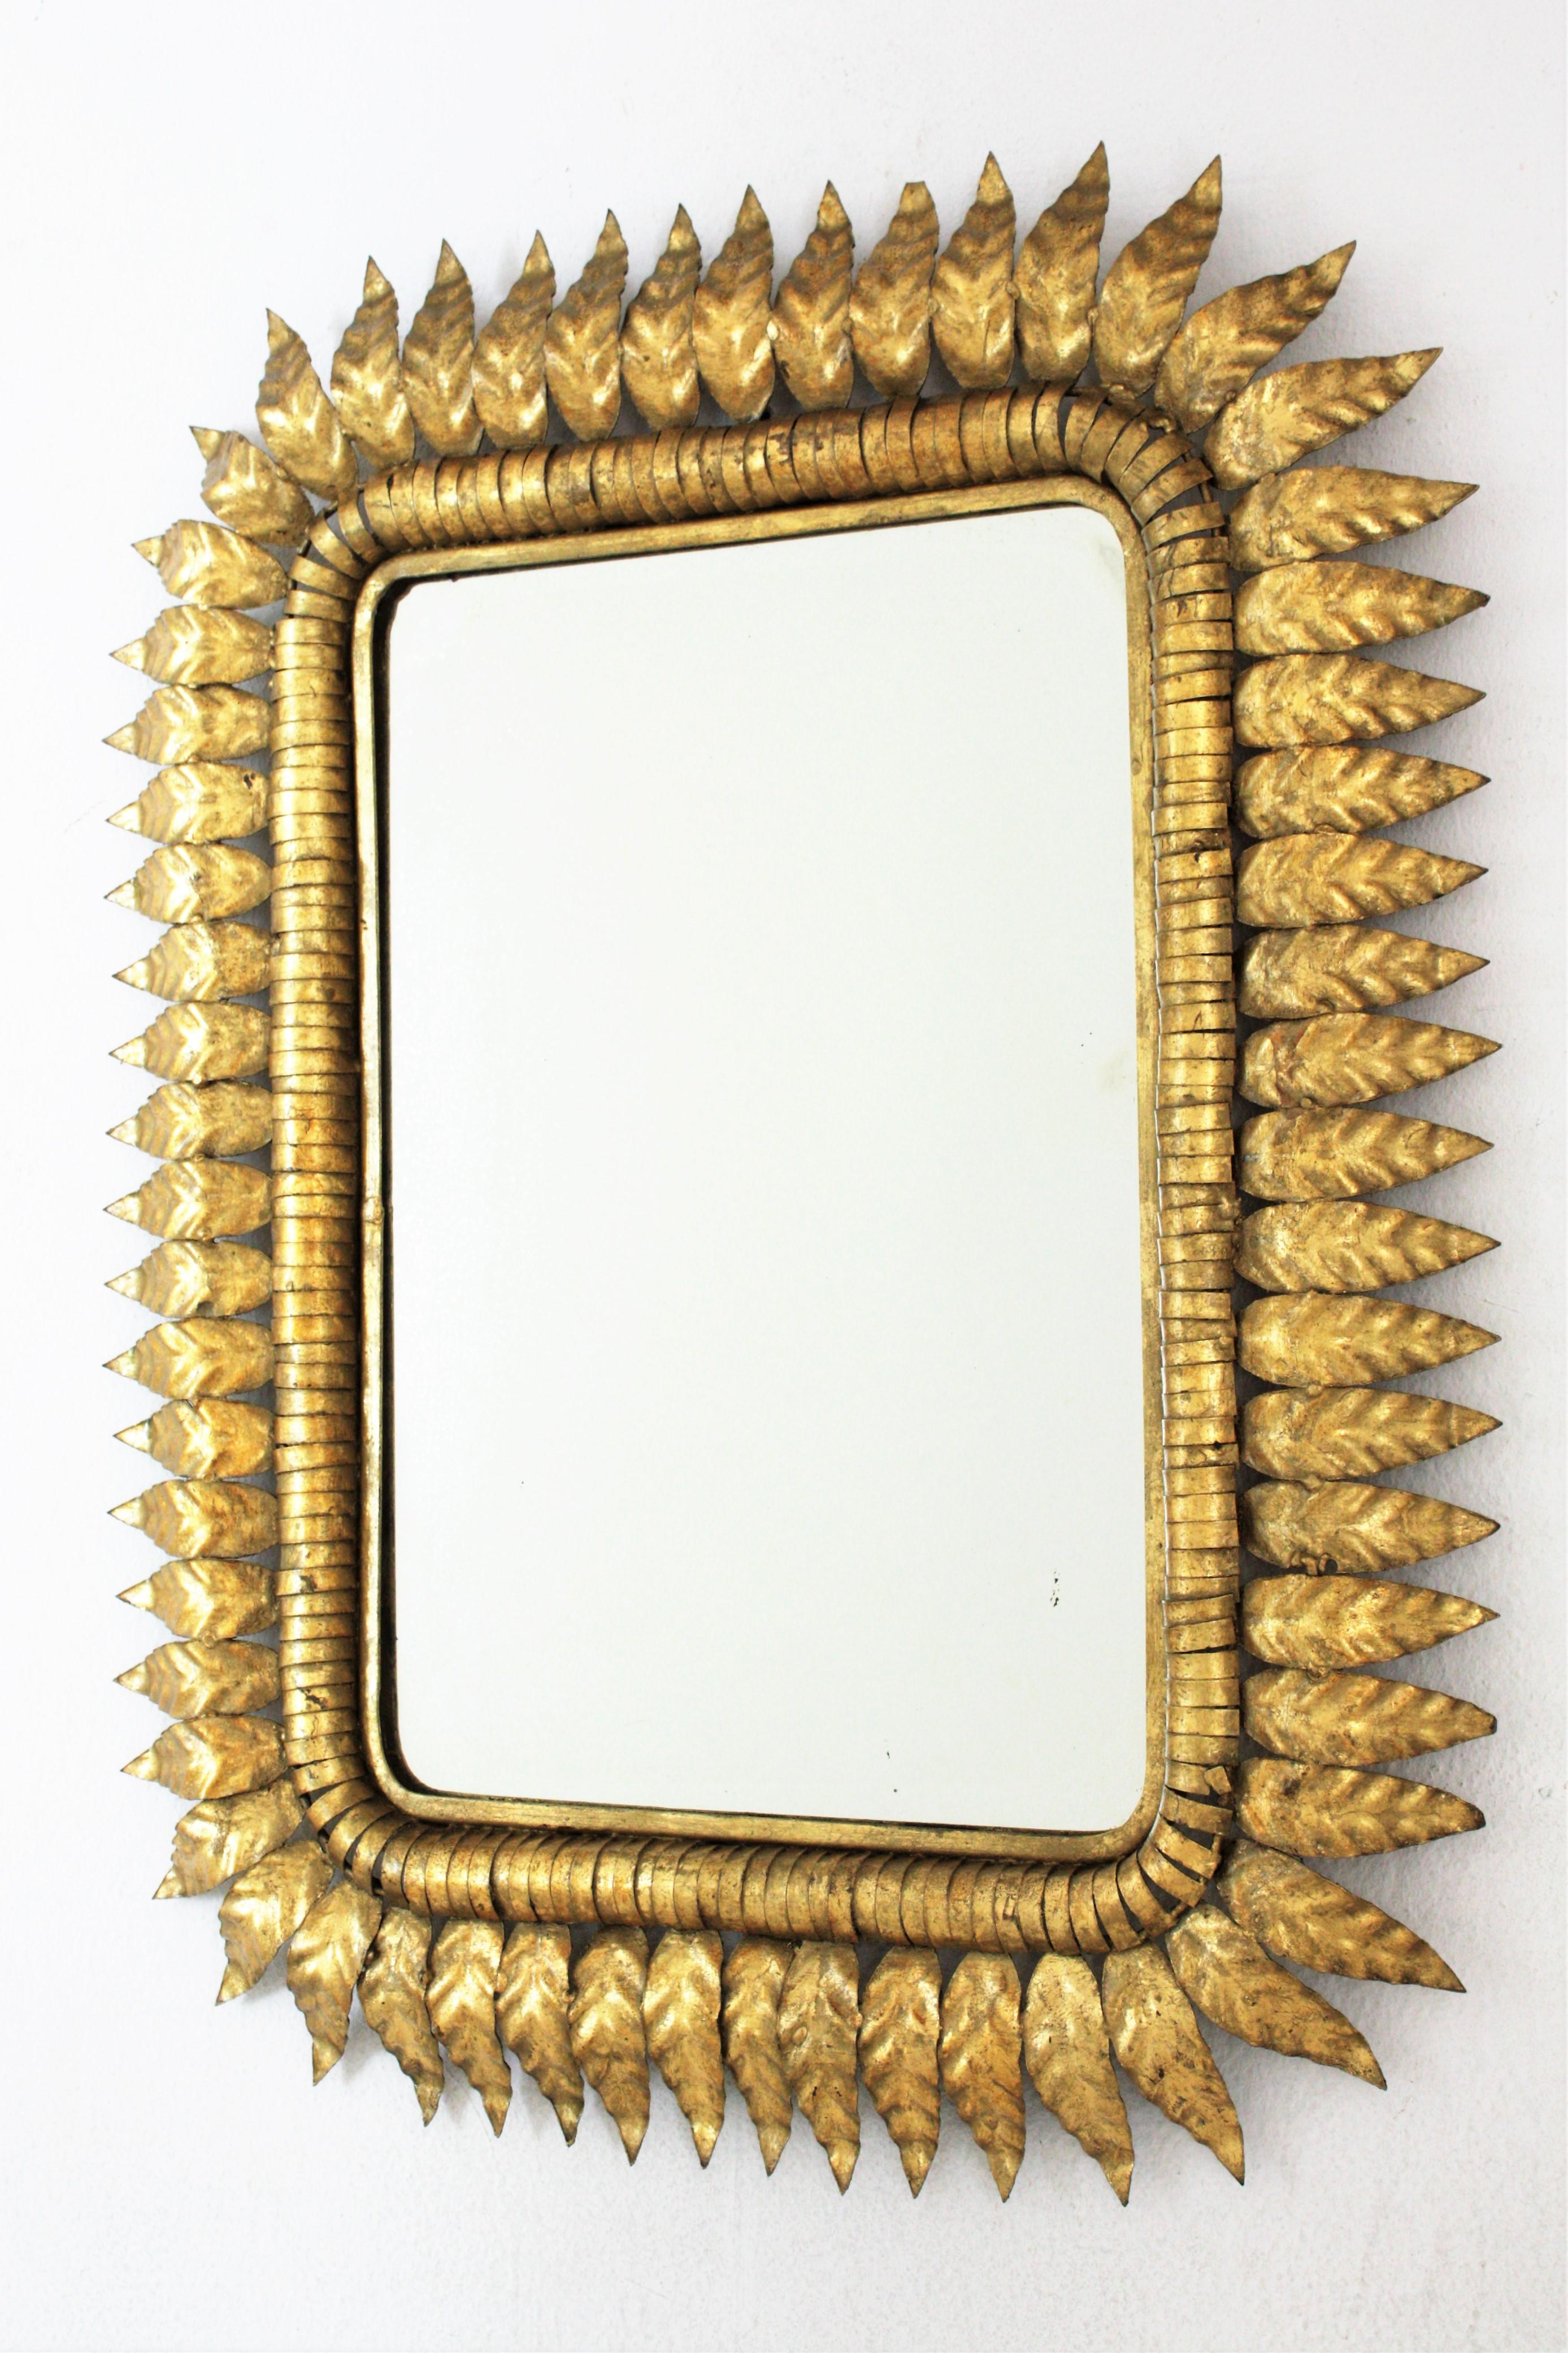 Sunburst Rectangular Mirror in Gilt Iron, Hollywood Regency  For Sale 1